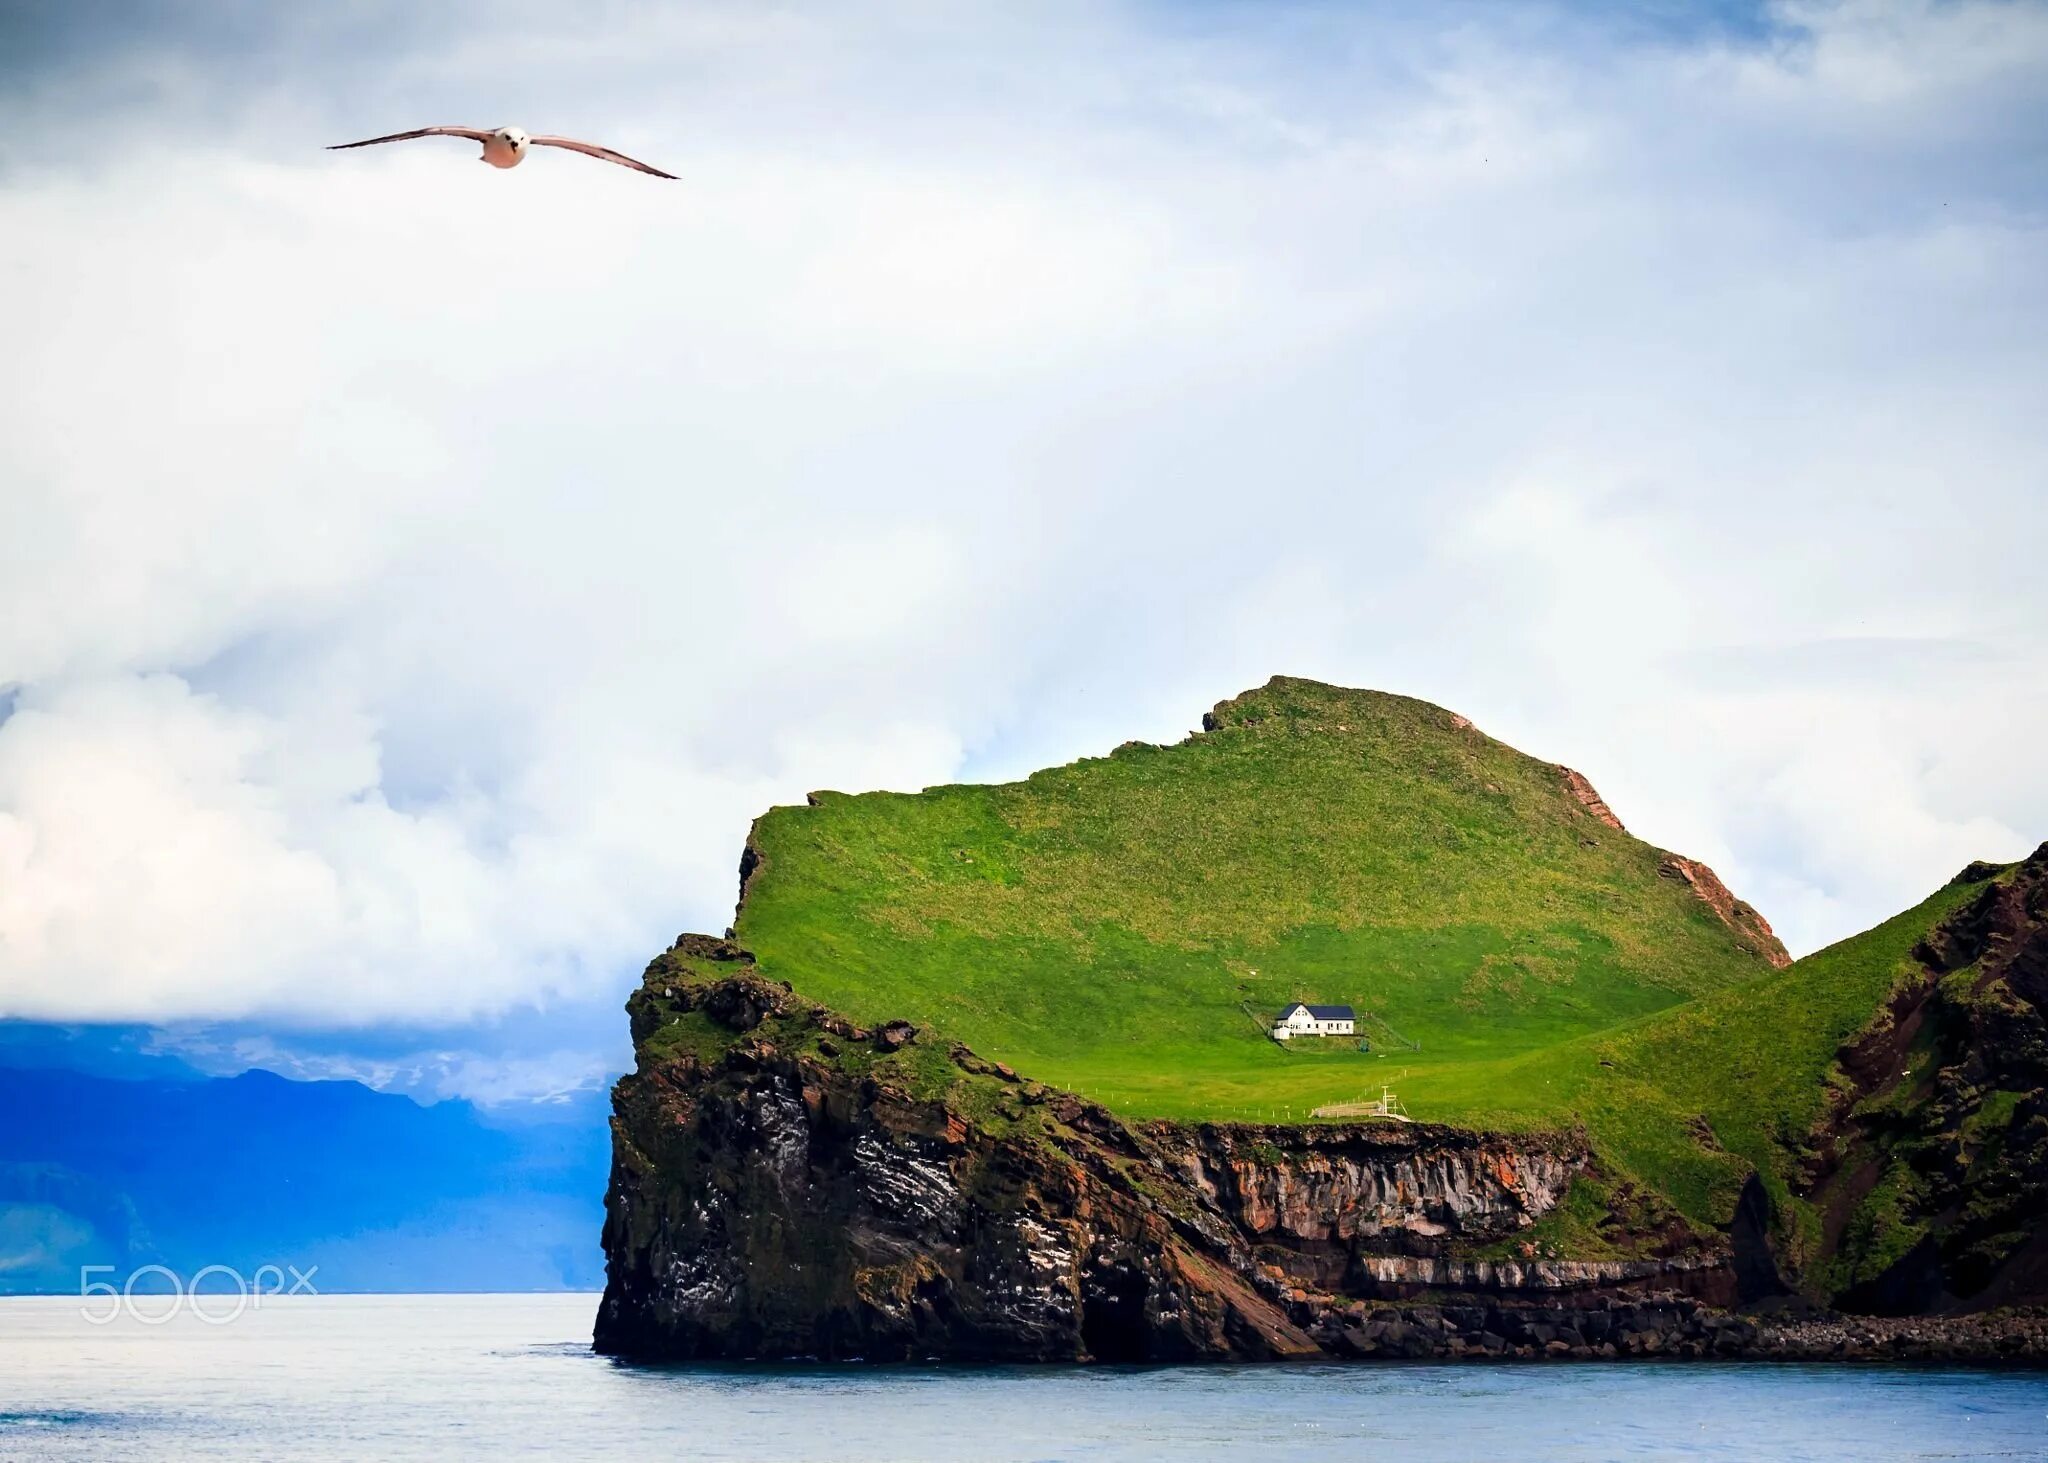 Остров Эллидаэй Исландия. Остров Эдлидаэй в Исландии. Самый одинокий дом в мире- остров Эллидаэй, Исландия 🇮🇸. Дом на острове Эллидаэй Исландия. 1 остров любой